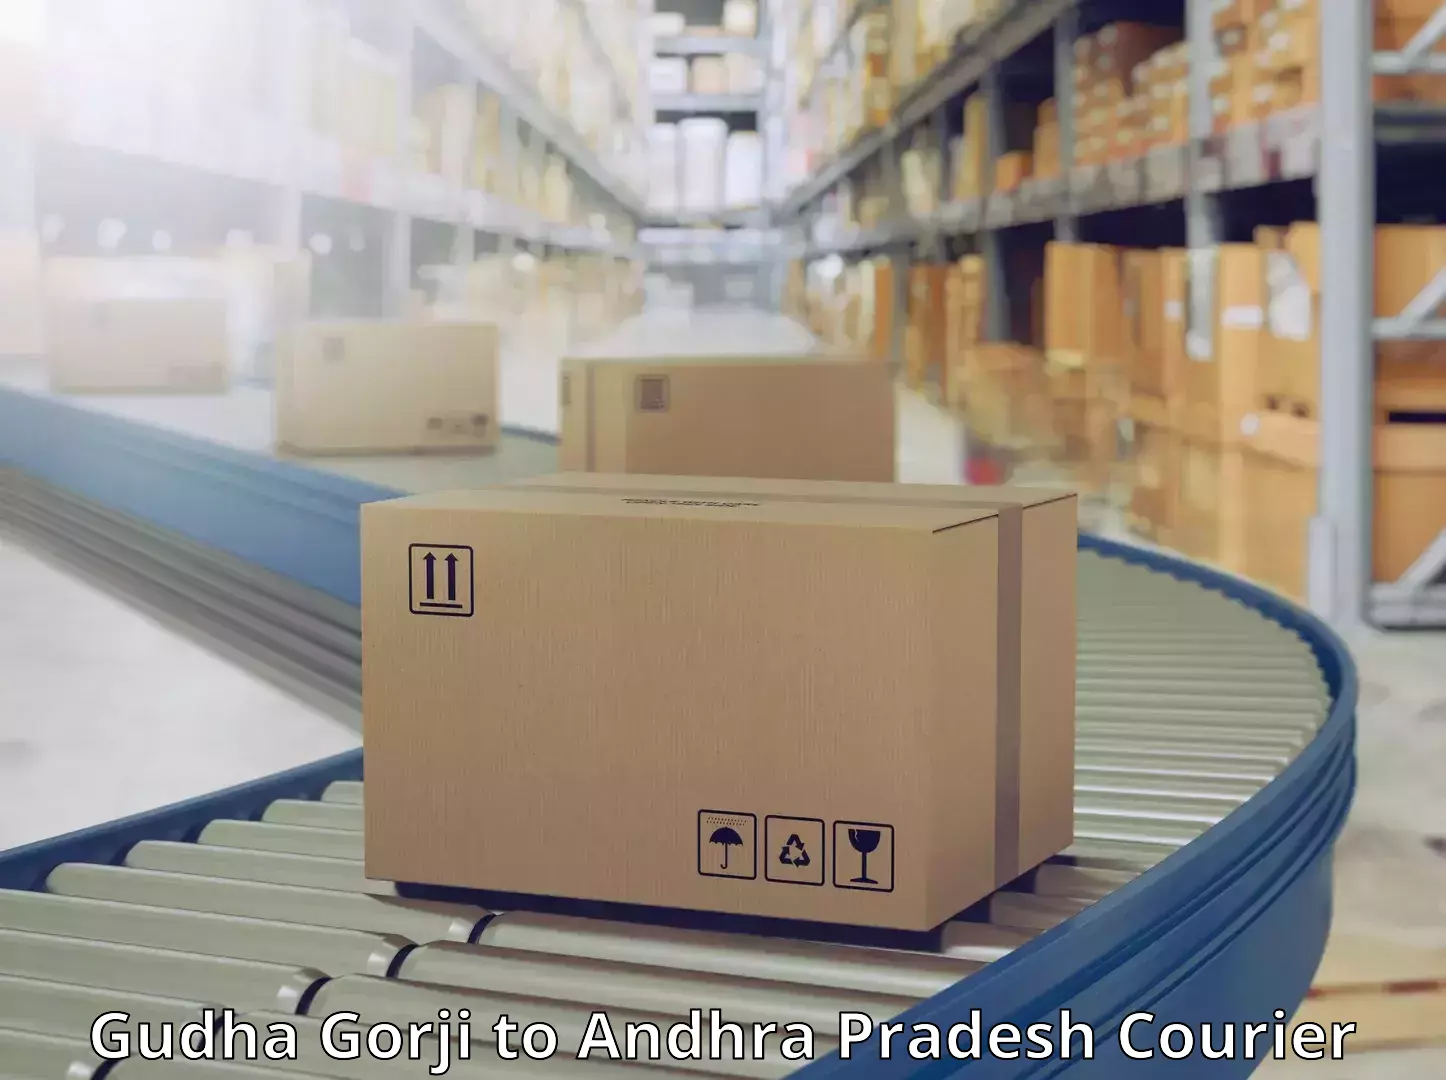 Rapid freight solutions Gudha Gorji to Andhra Pradesh